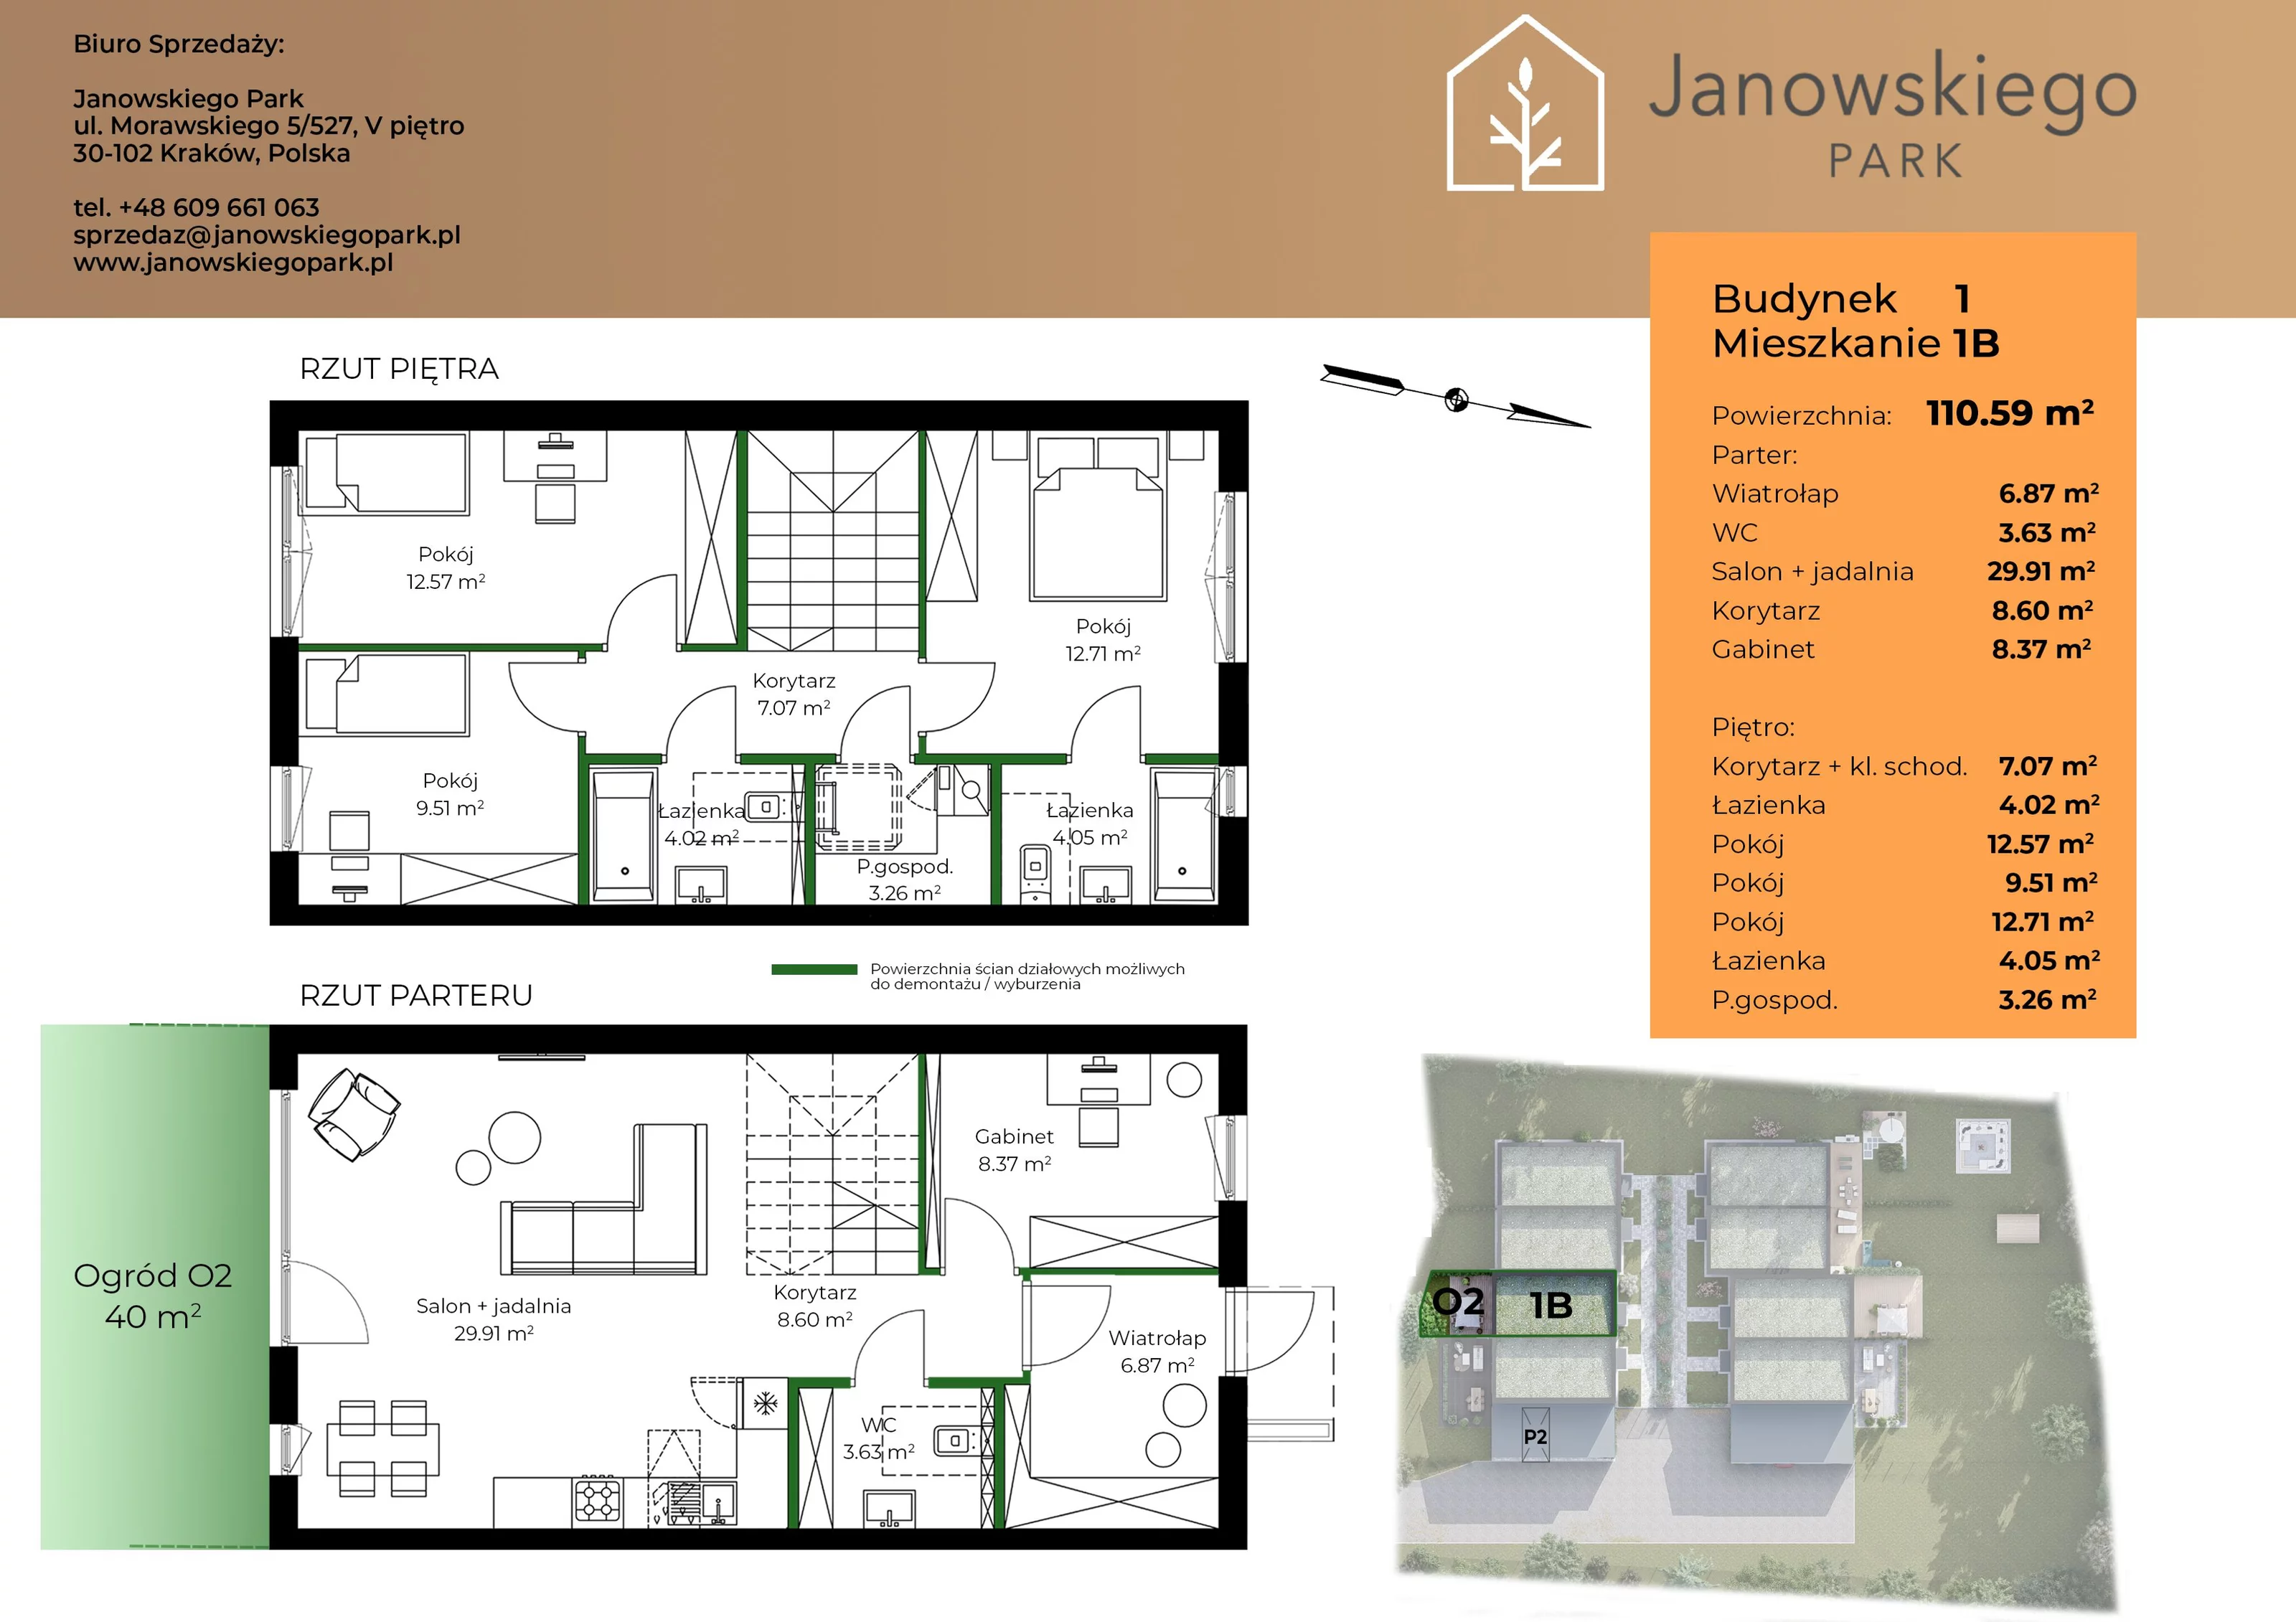 Mieszkanie 110,59 m², parter, oferta nr B1-1B, Janowskiego Park, Kraków, Swoszowice, Kliny Borkowskie, ul. Jana Janowskiego